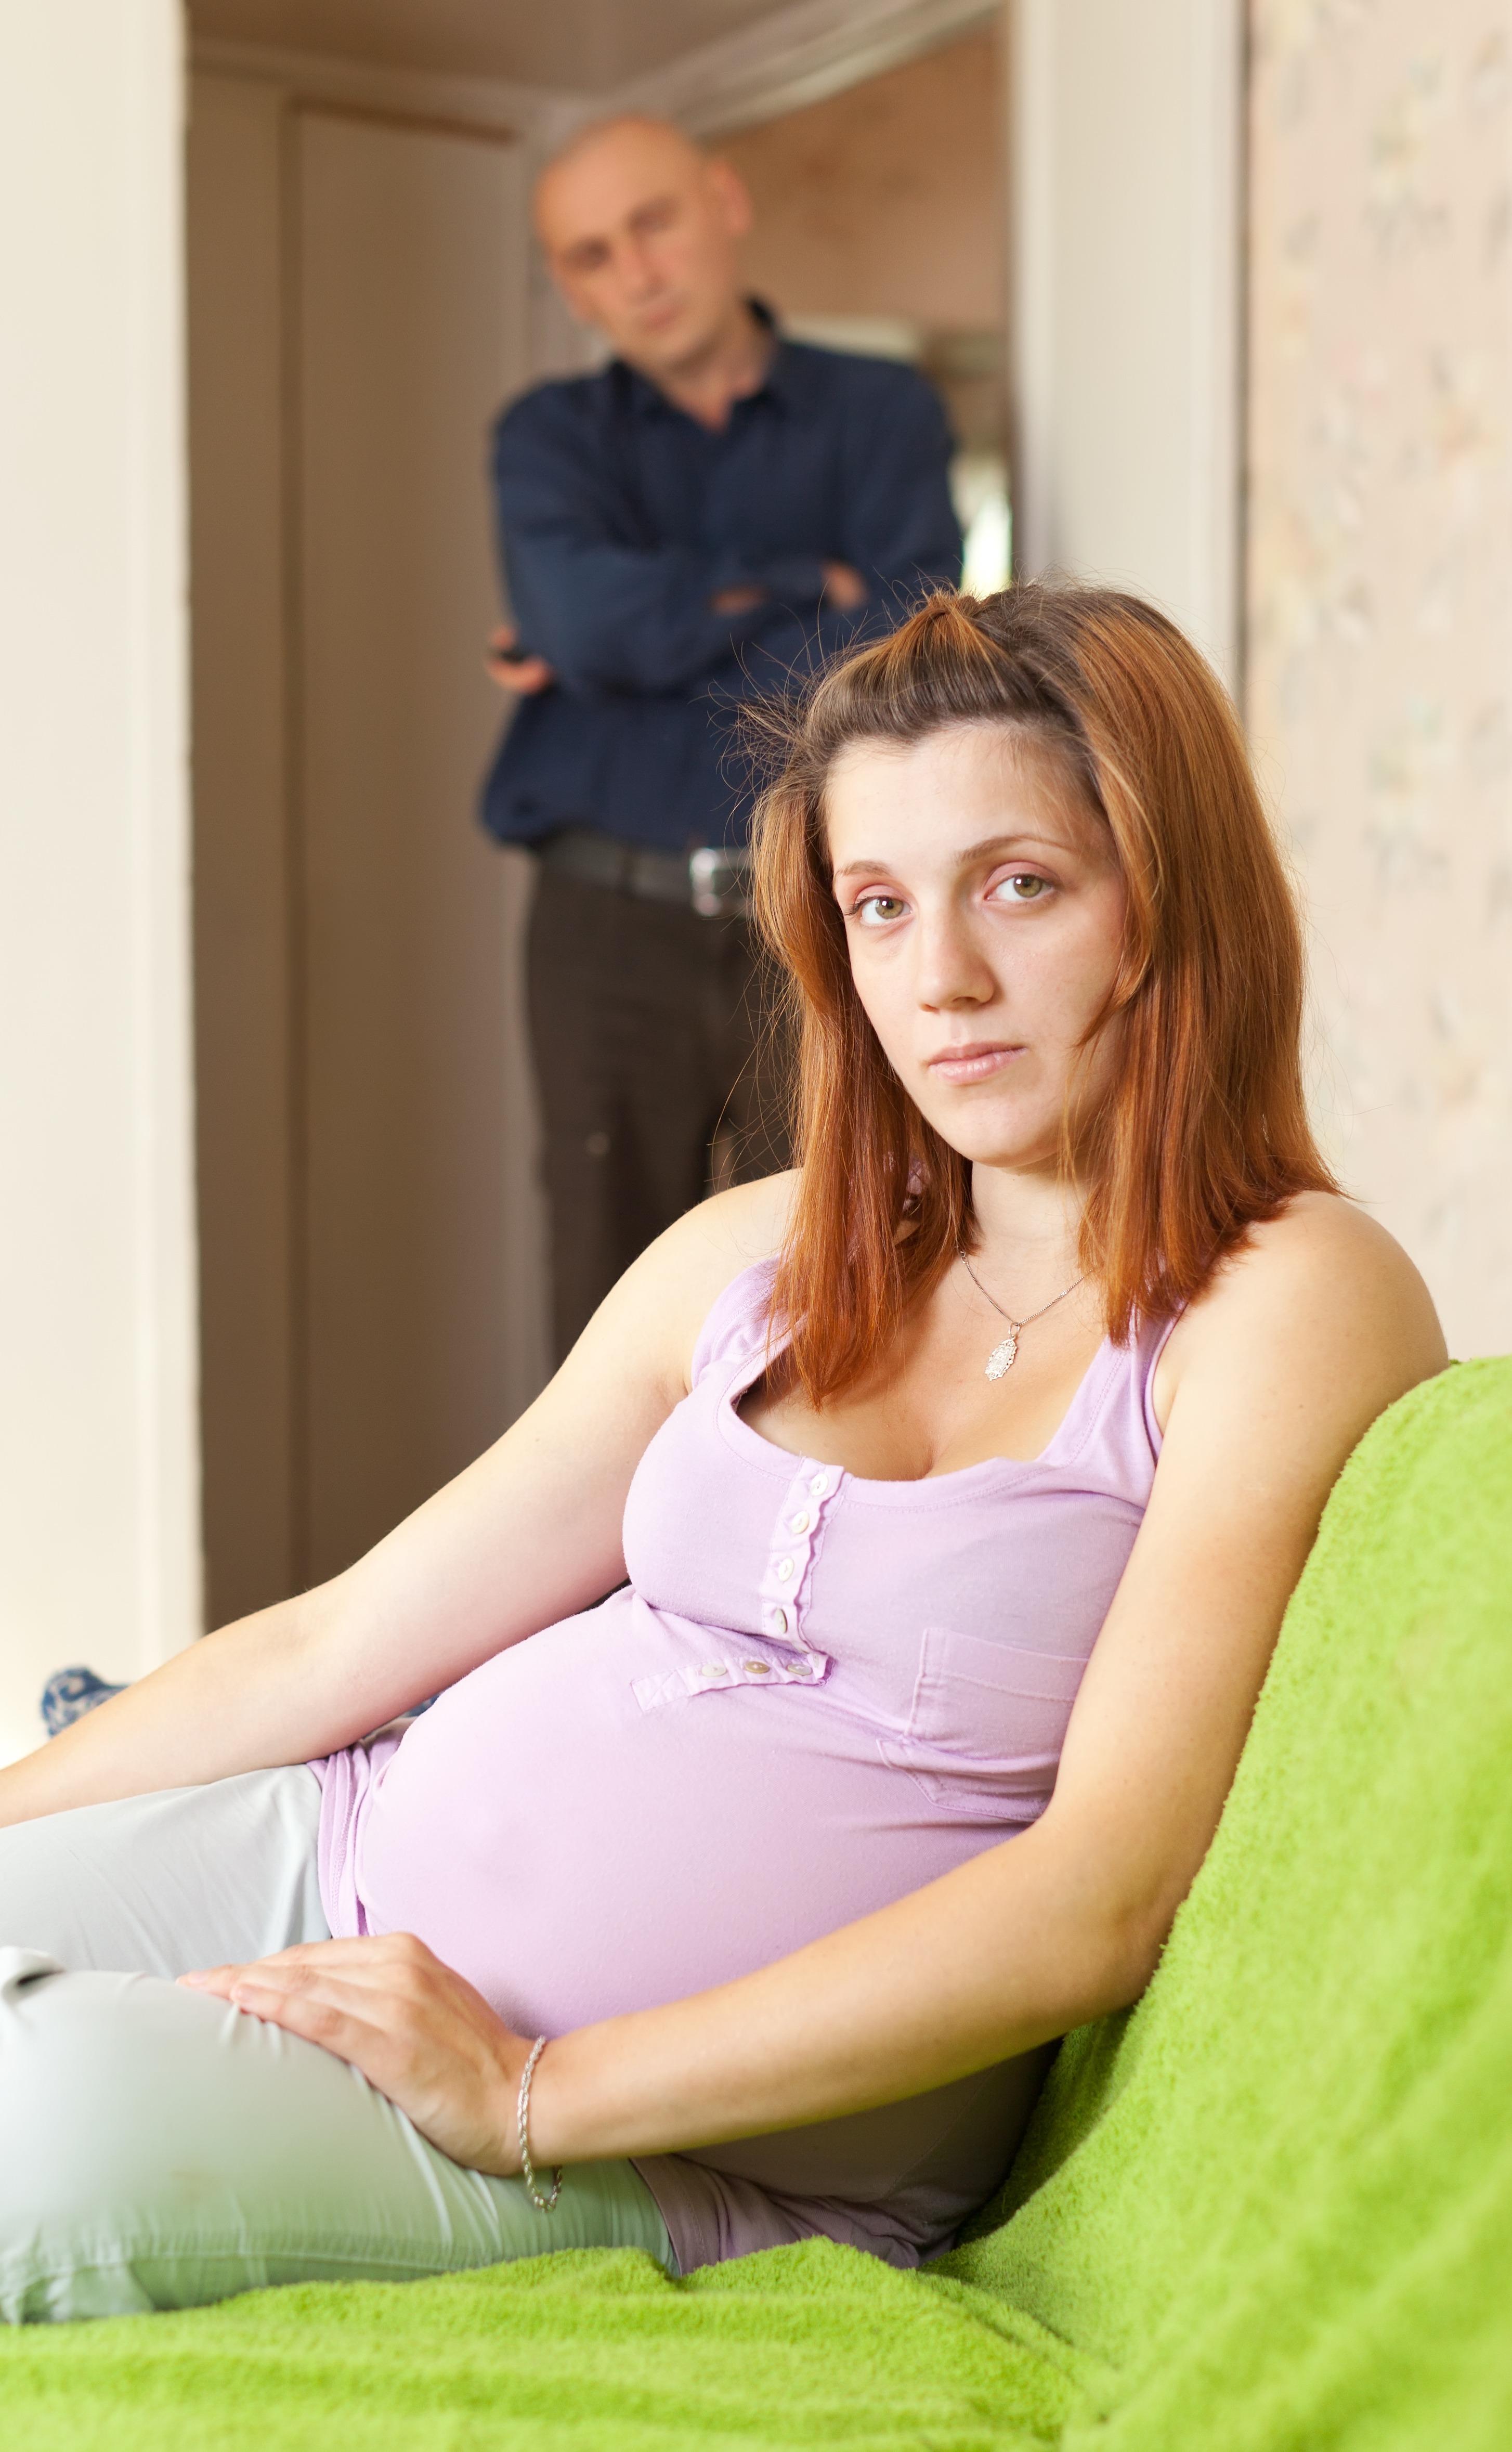 Une femme enceinte avec un homme se tenant derrière elle | Source : Shutterstock